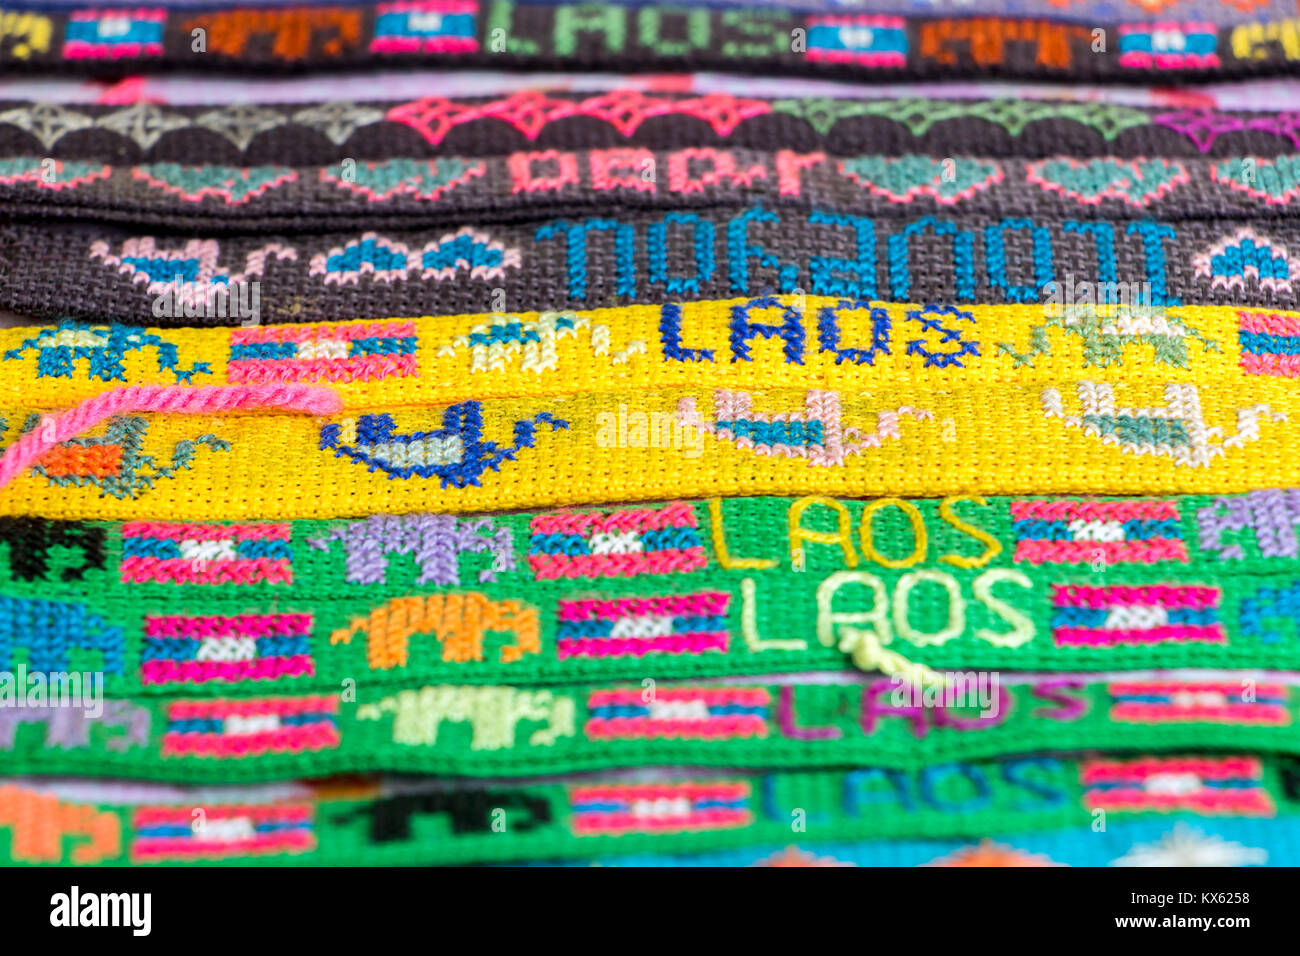 LAOS, Luang Prabang, le 30 mai 2017, une vue détaillée du bracelet coloré dans un magasin offre. Bracelet fait main dans une rangée, close-up, village Hmong au Laos. Banque D'Images